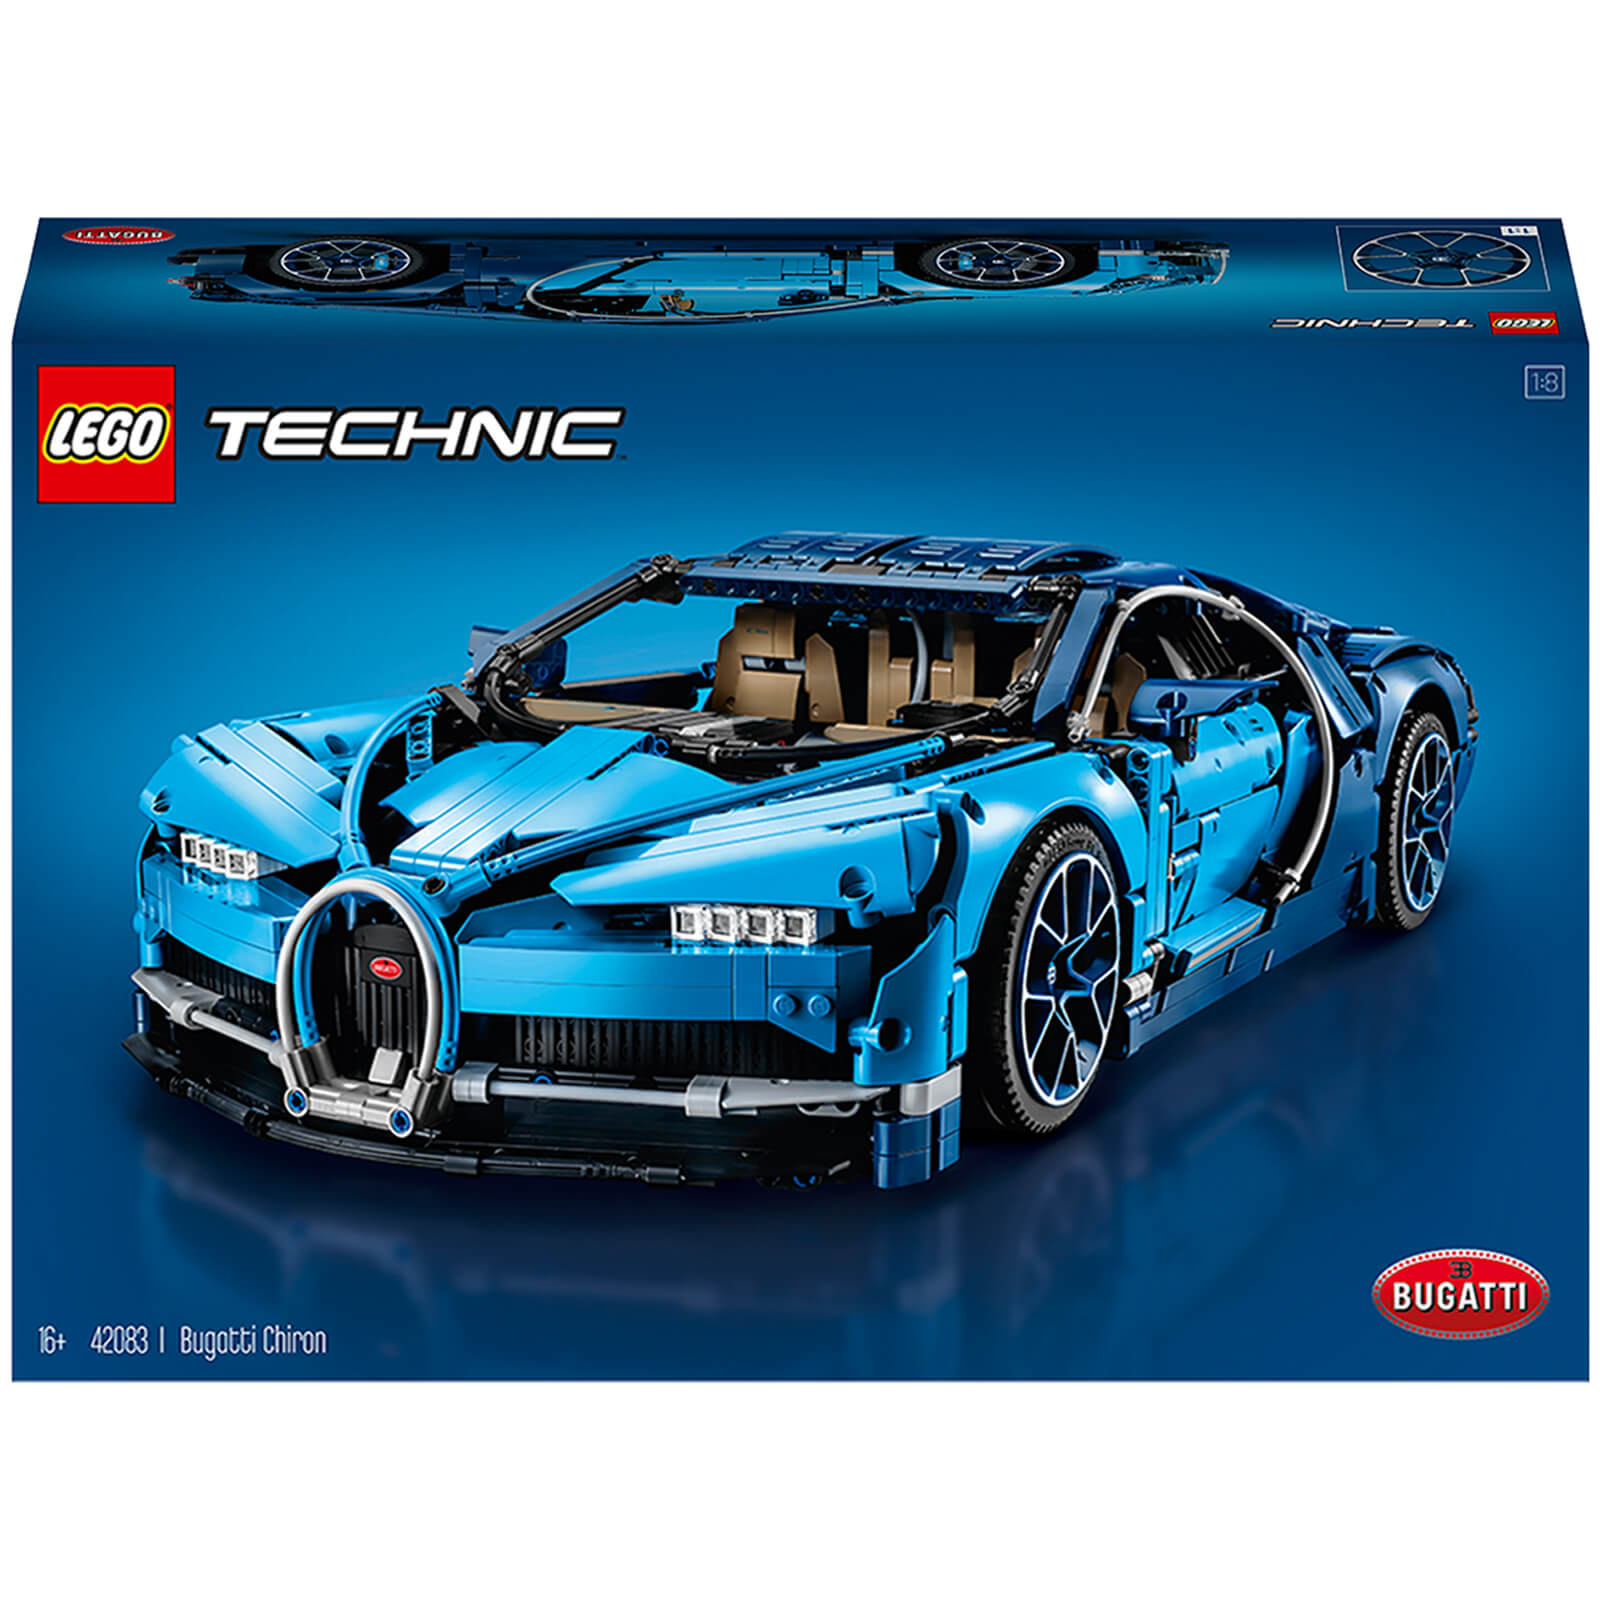 LEGO Technic: Modelo de coche de carreras deportivo Bugatti Chiron (42083)